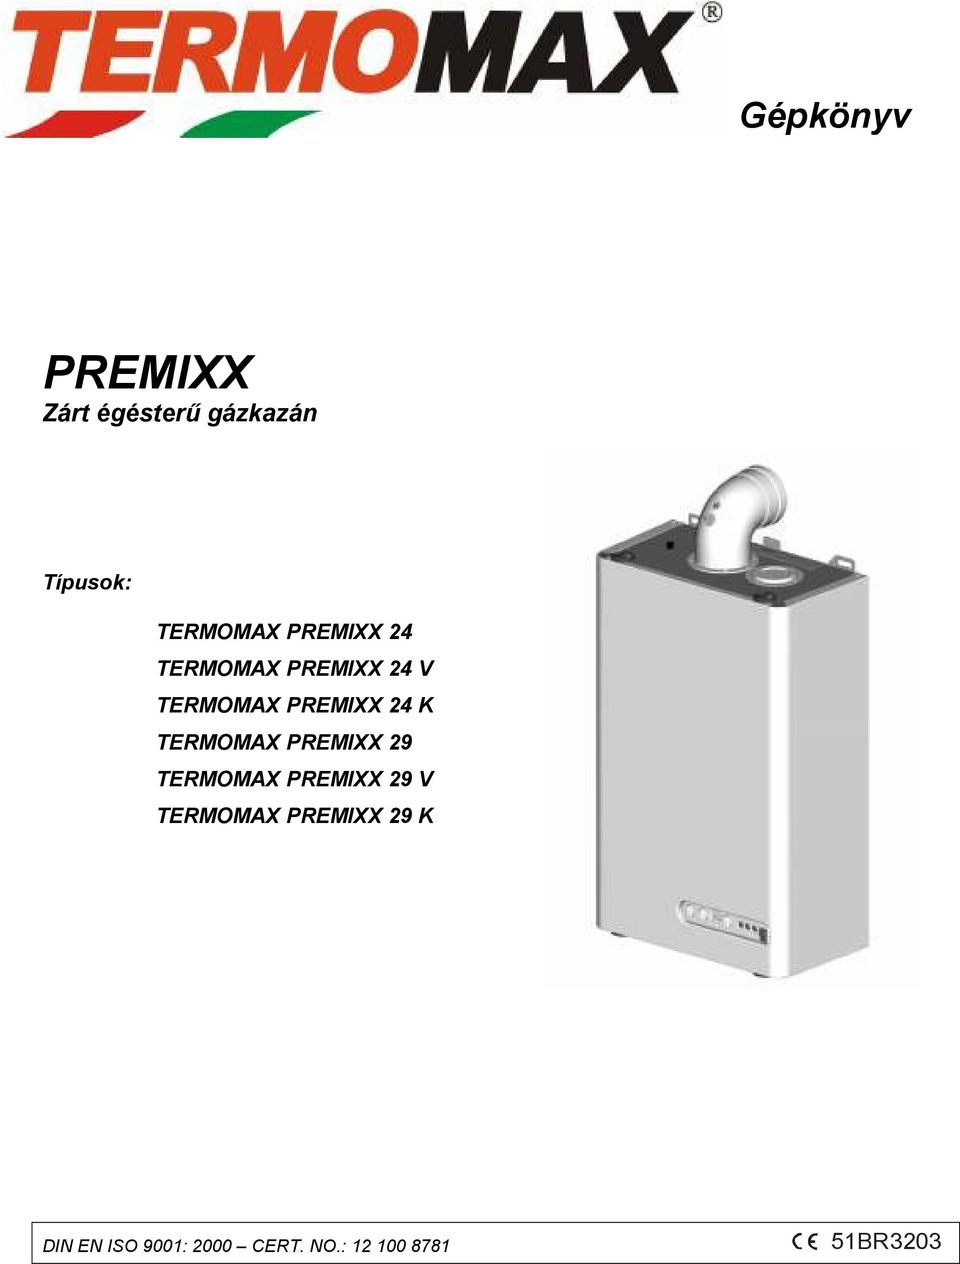 TERMOMAX PREMIXX 29 TERMOMAX PREMIXX 29 V TERMOMAX